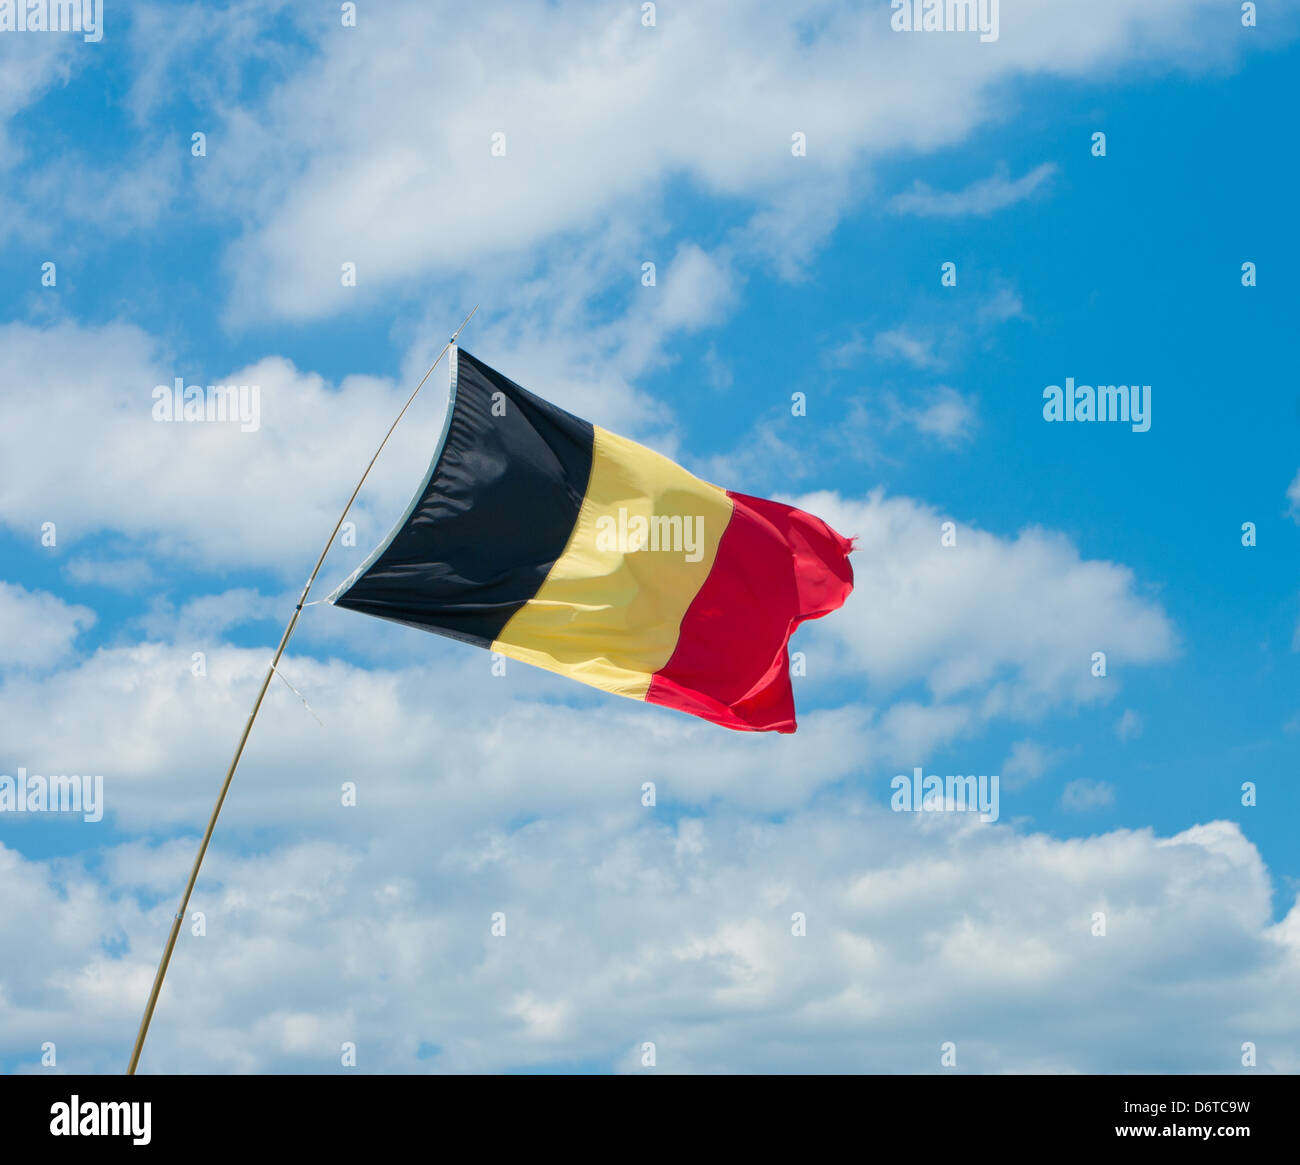 Bandera belga en una brisa fuerte contra un cielo nublado azul Foto de stock